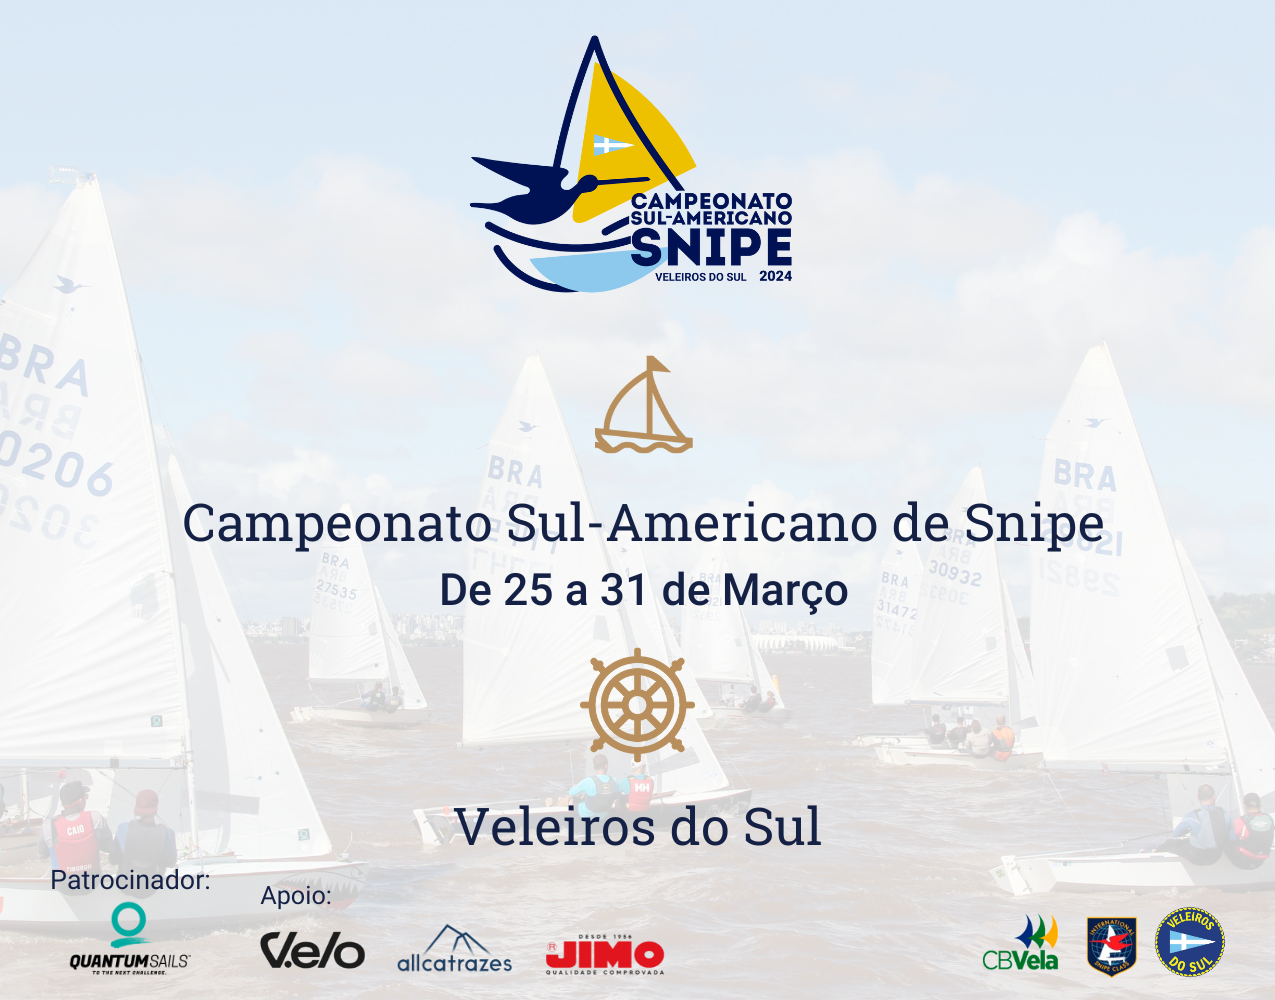 Faltam 10 dias para o Campeonato Sul-Americano de Snipe 2024! Saiba mais